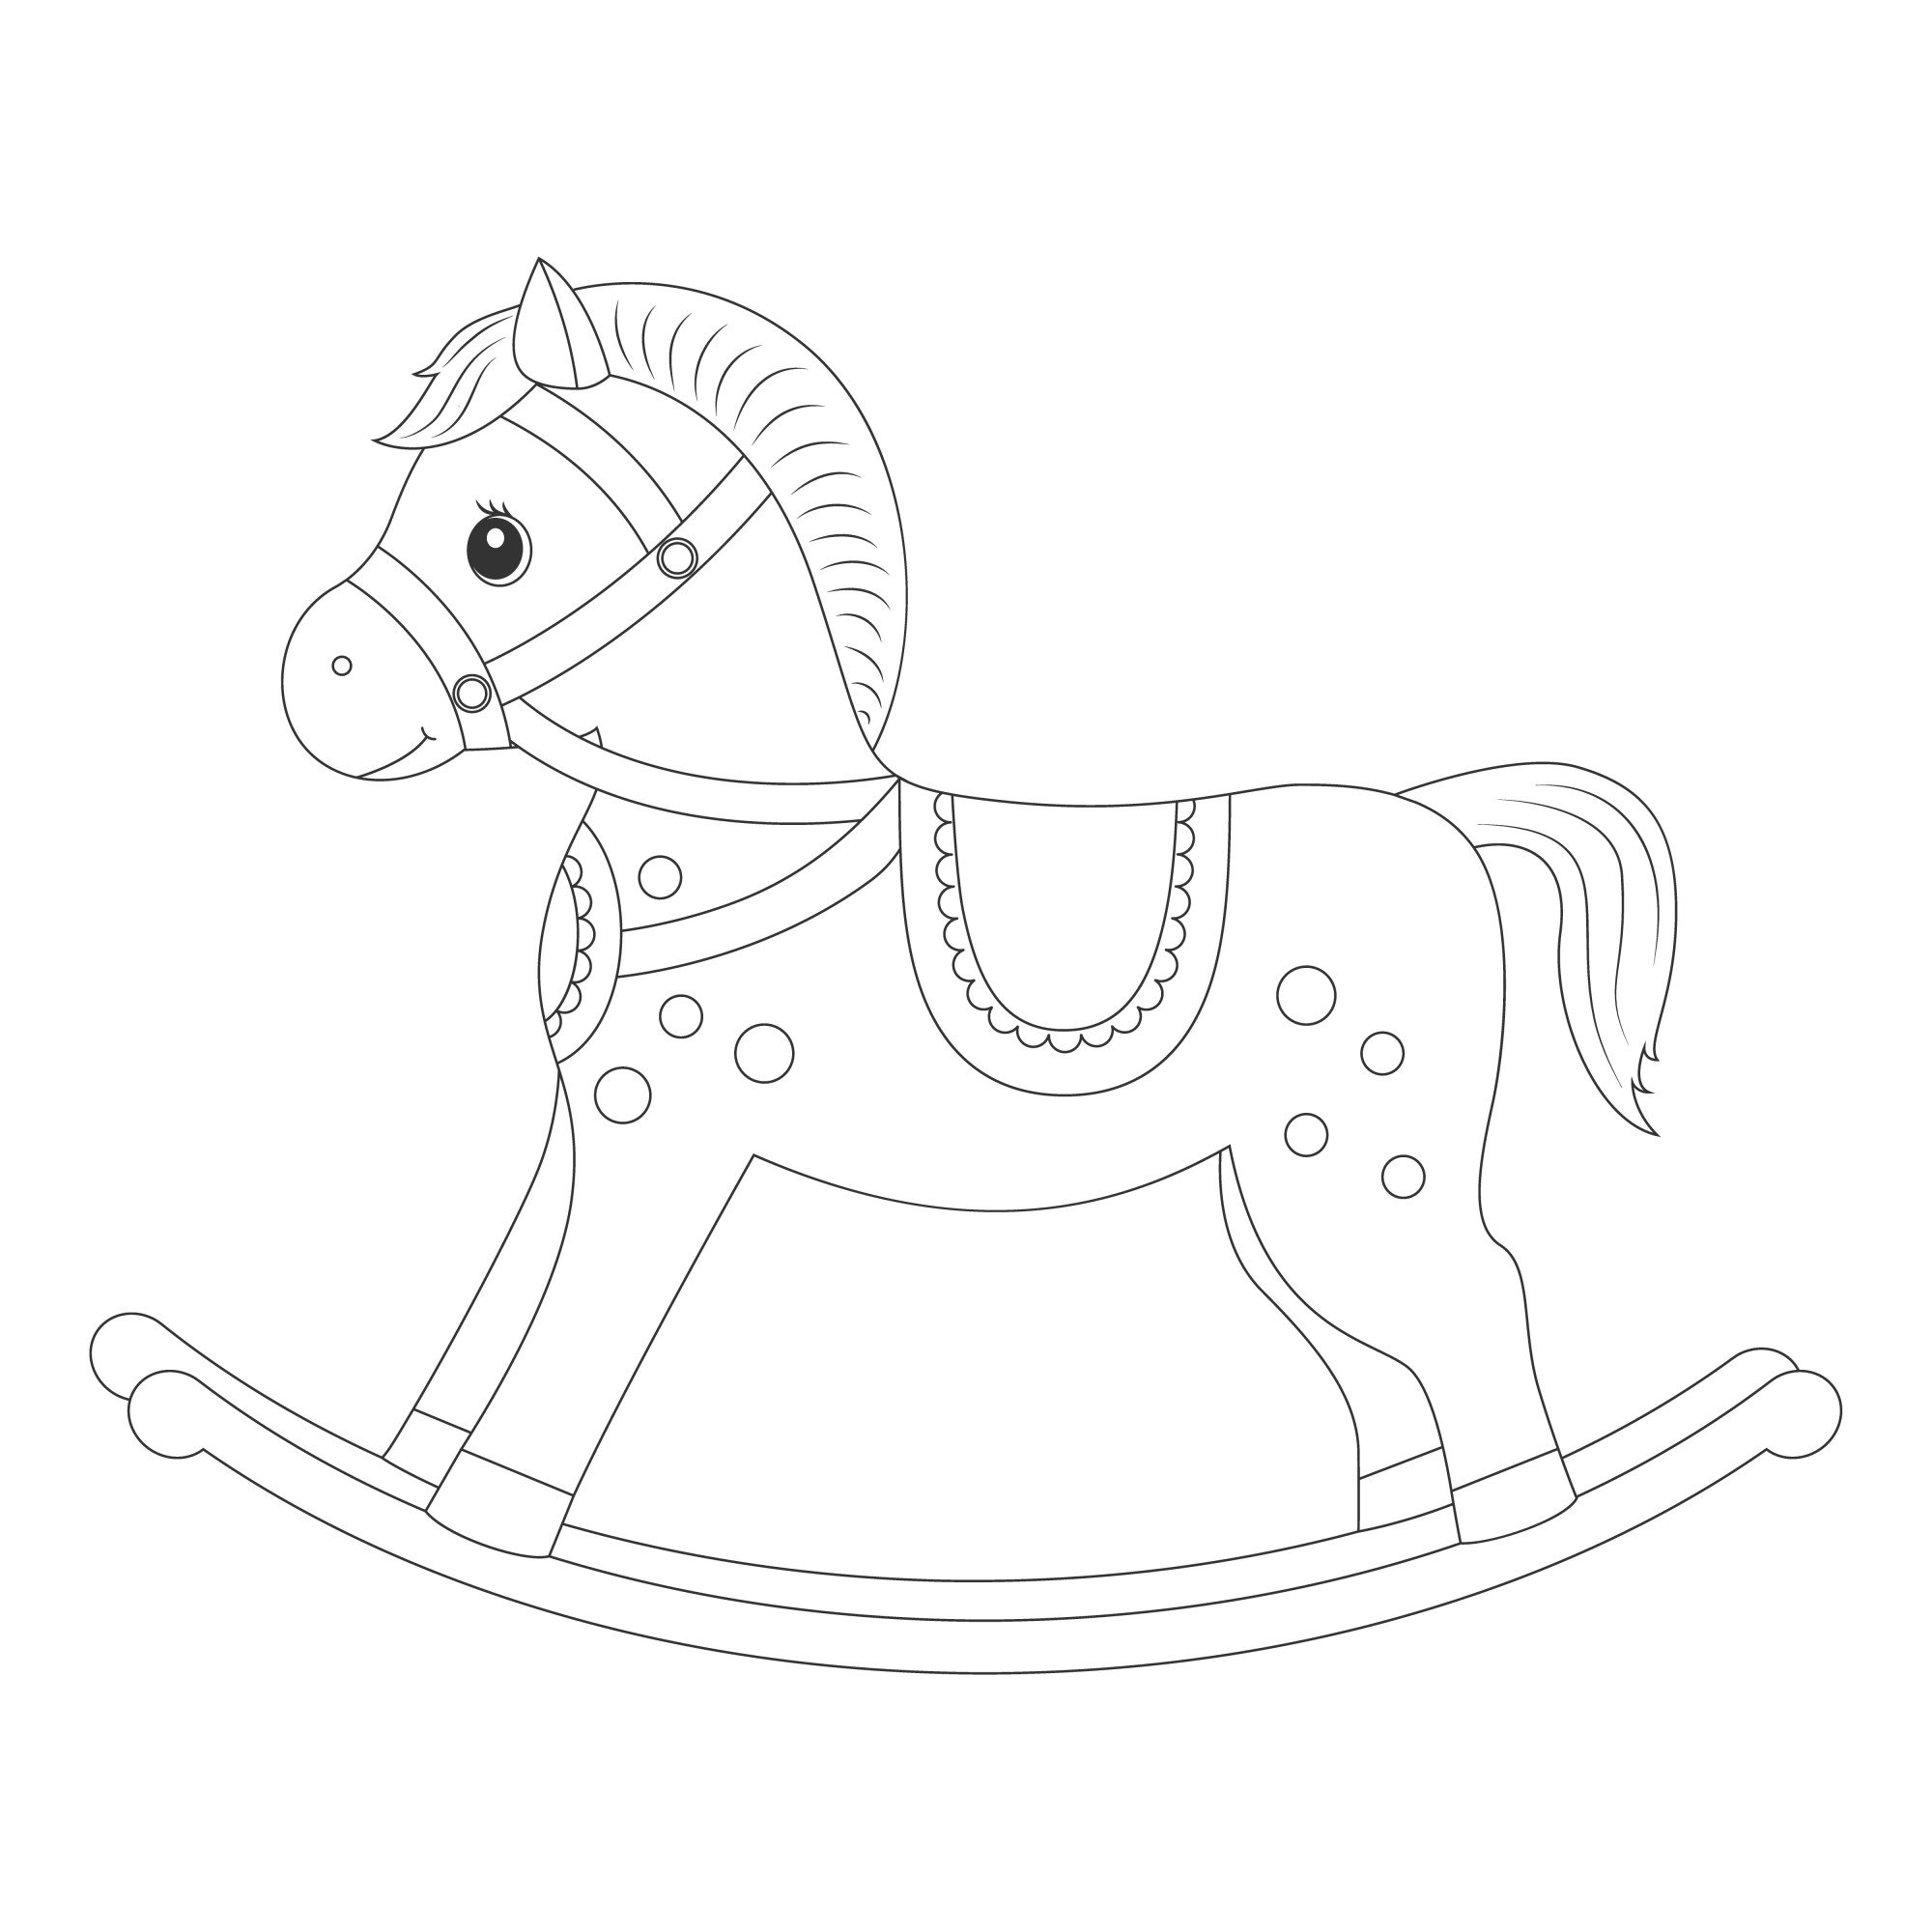 Раскраска для детей: красивая игрушка лошадка-качалка